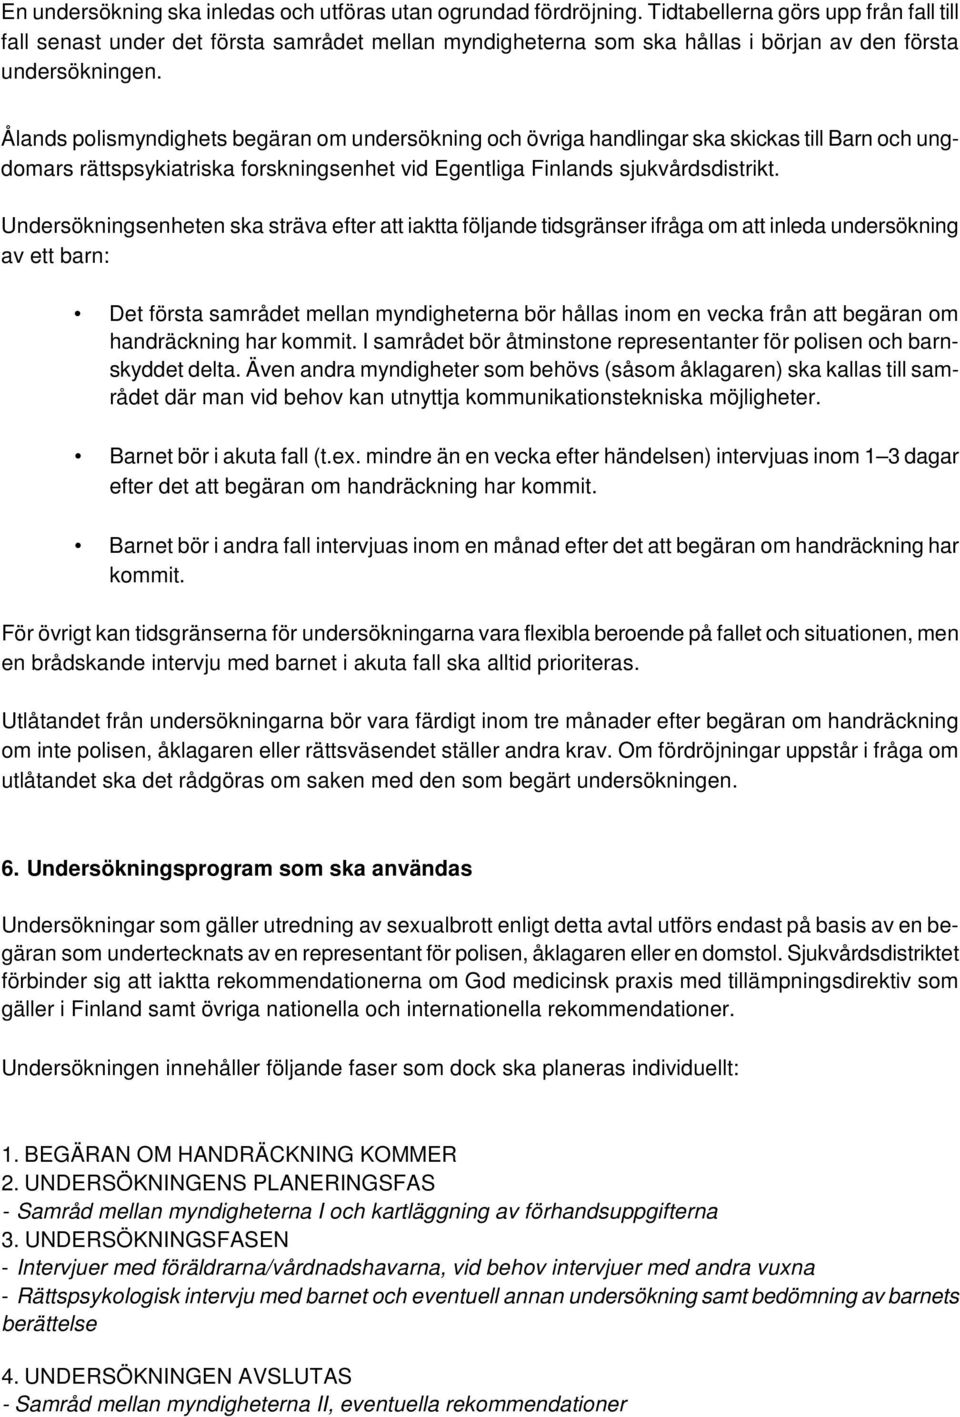 Ålands polismyndighets begäran om undersökning och övriga handlingar ska skickas till Barn och ungdomars rättspsykiatriska forskningsenhet vid Egentliga Finlands sjukvårdsdistrikt.